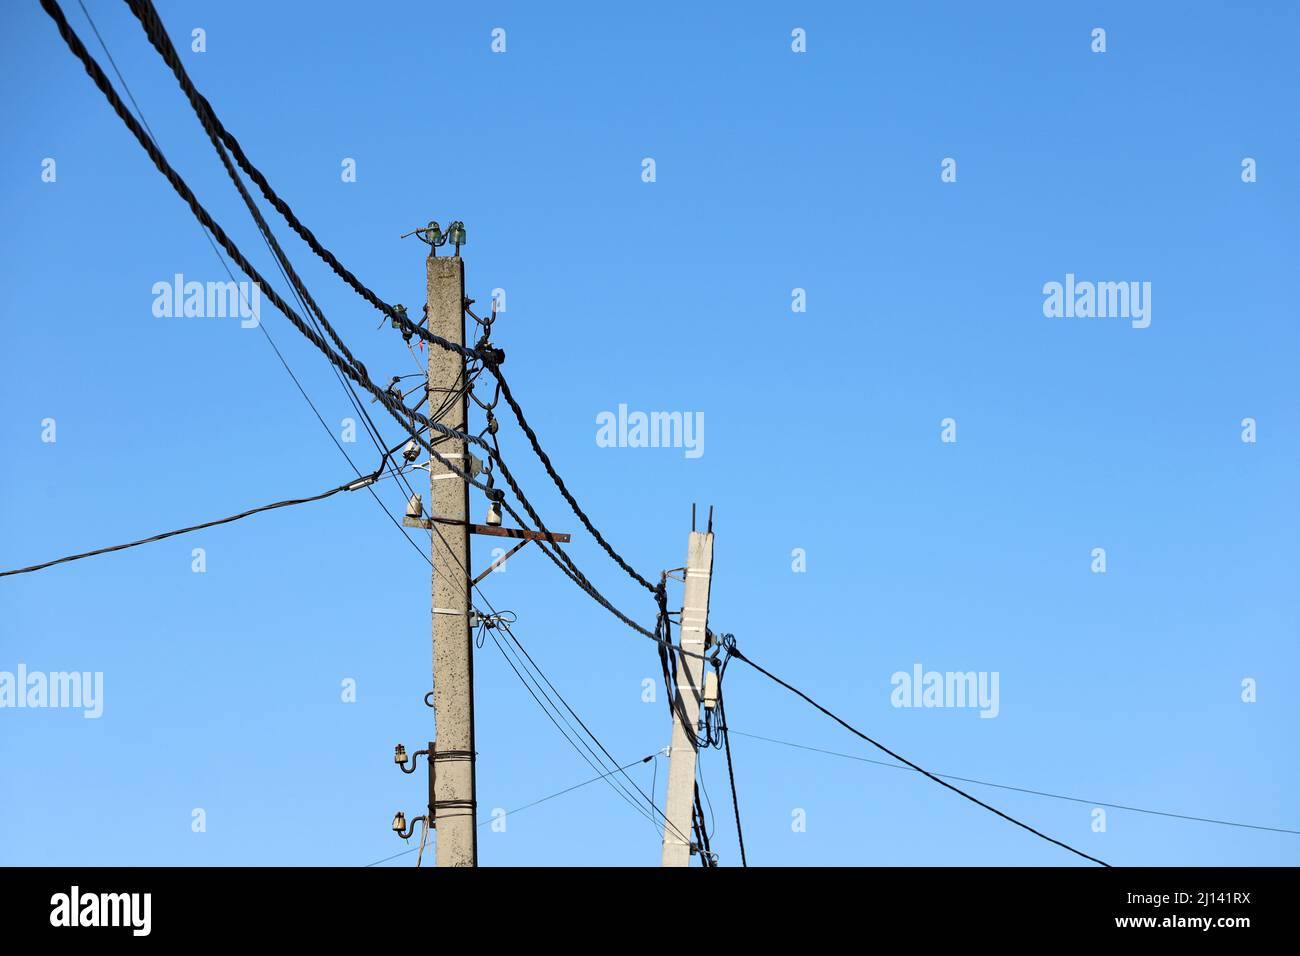 Stromleitungsmasten mit verwickelten elektrischen Drähten und Kondensatoren auf blauem Himmel Hintergrund. Stromübertragungsleitung, Stromversorgung Stockfoto